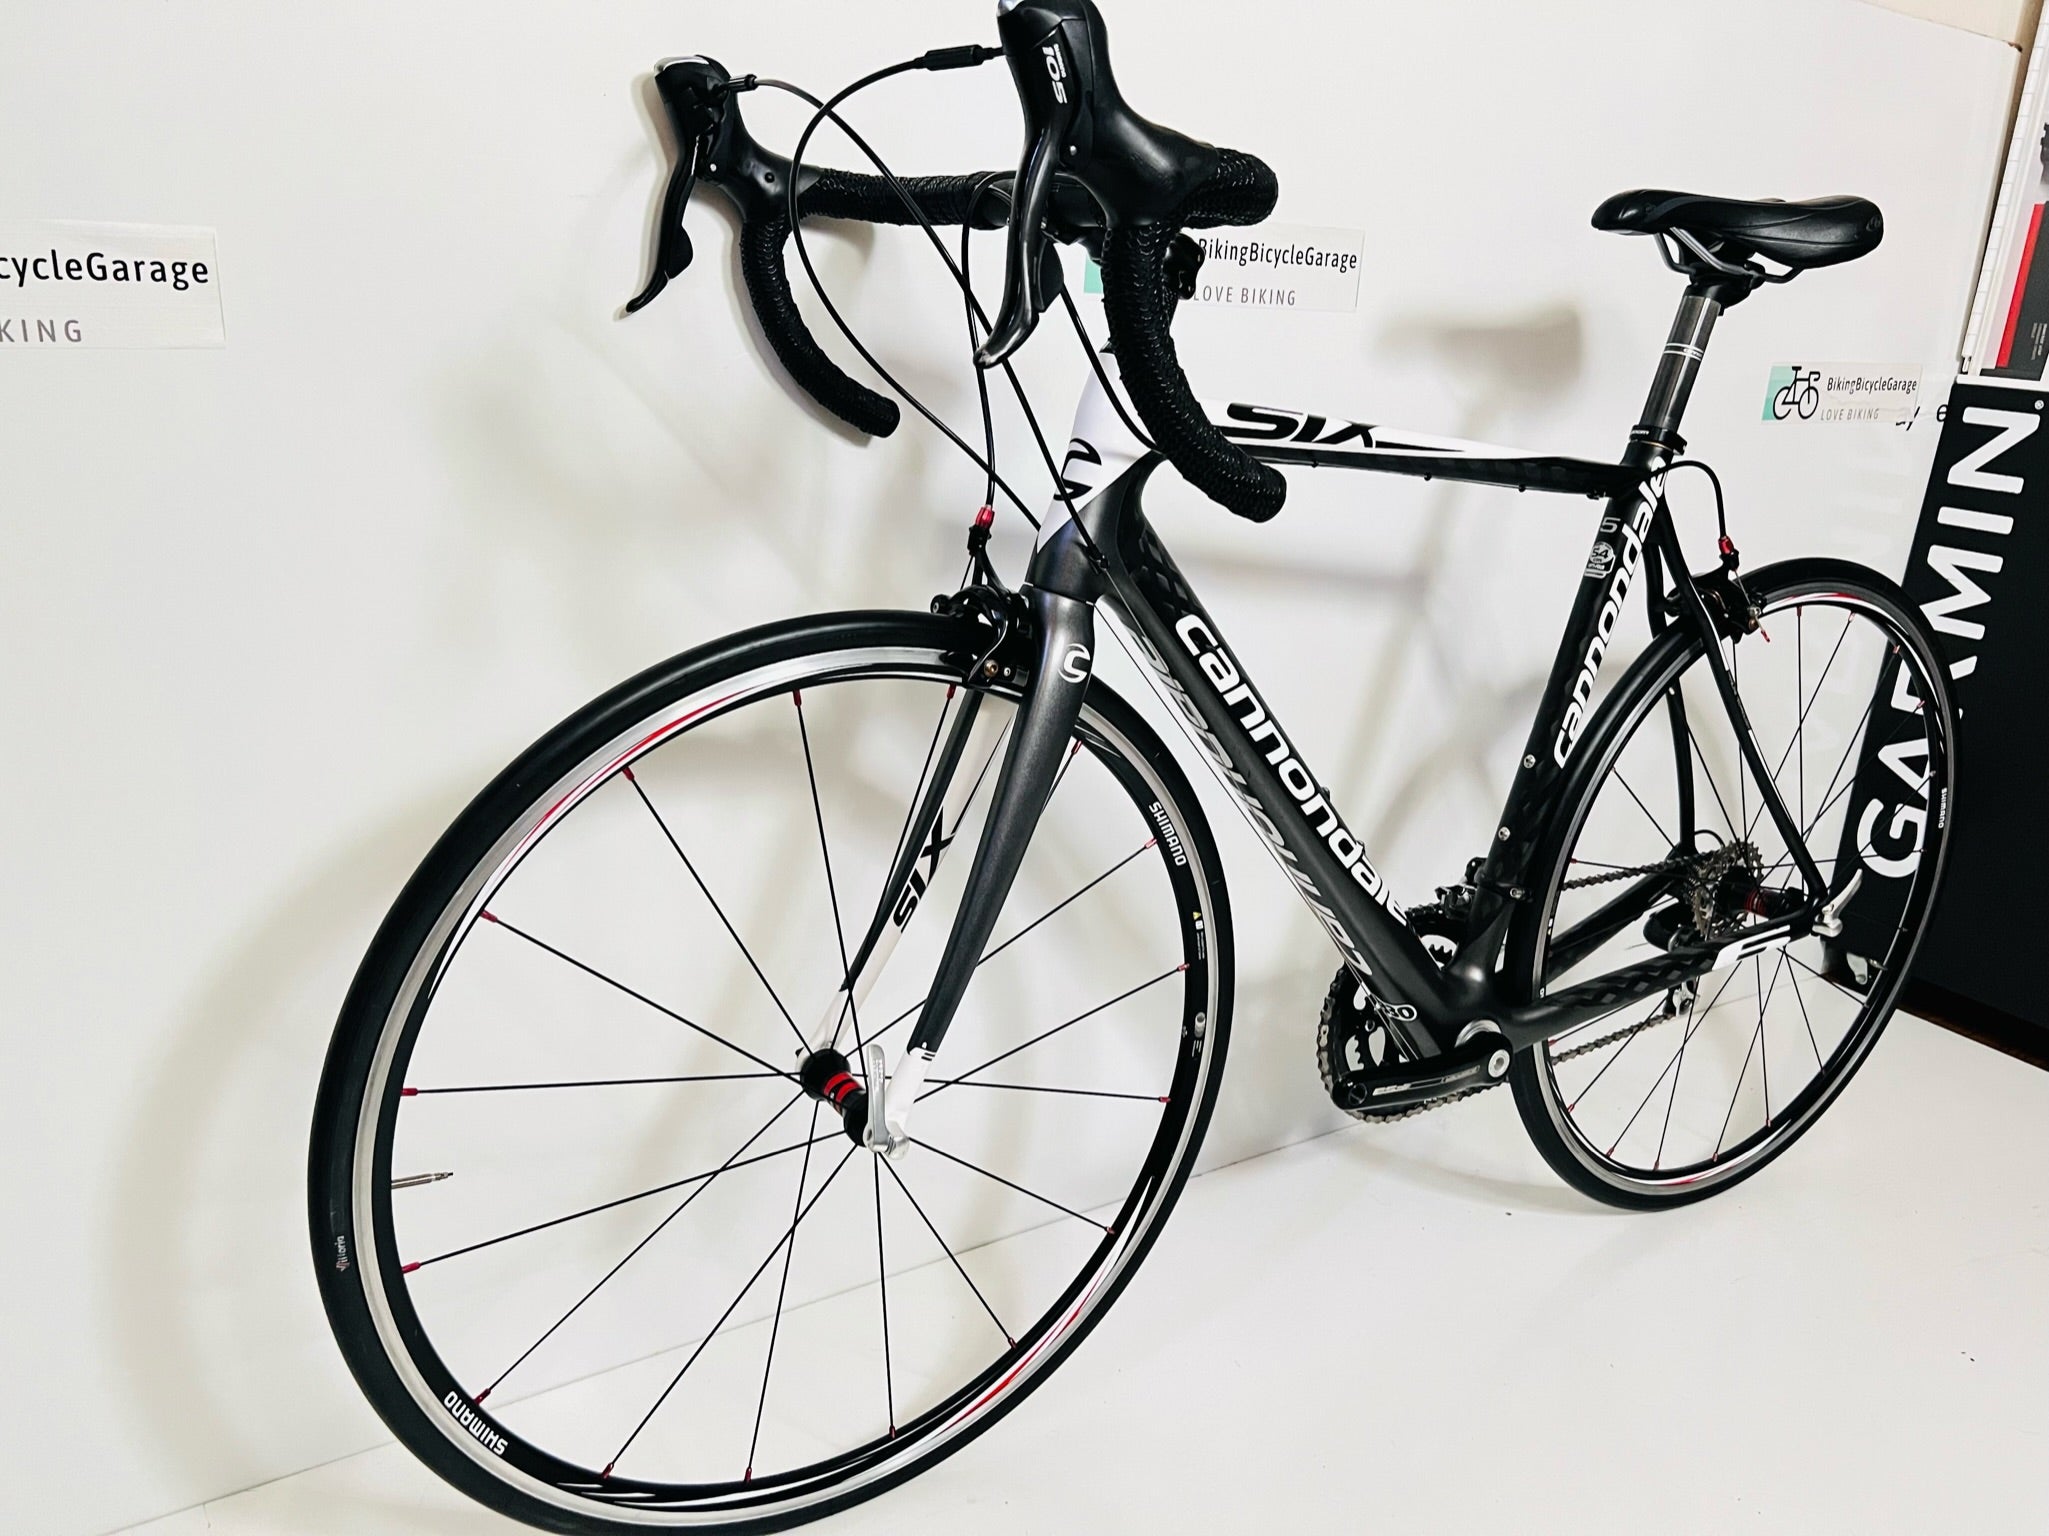 Cannondale Six , Shimano 105, Carbon Fiber Road Bike, 18 Pounds! 54cm